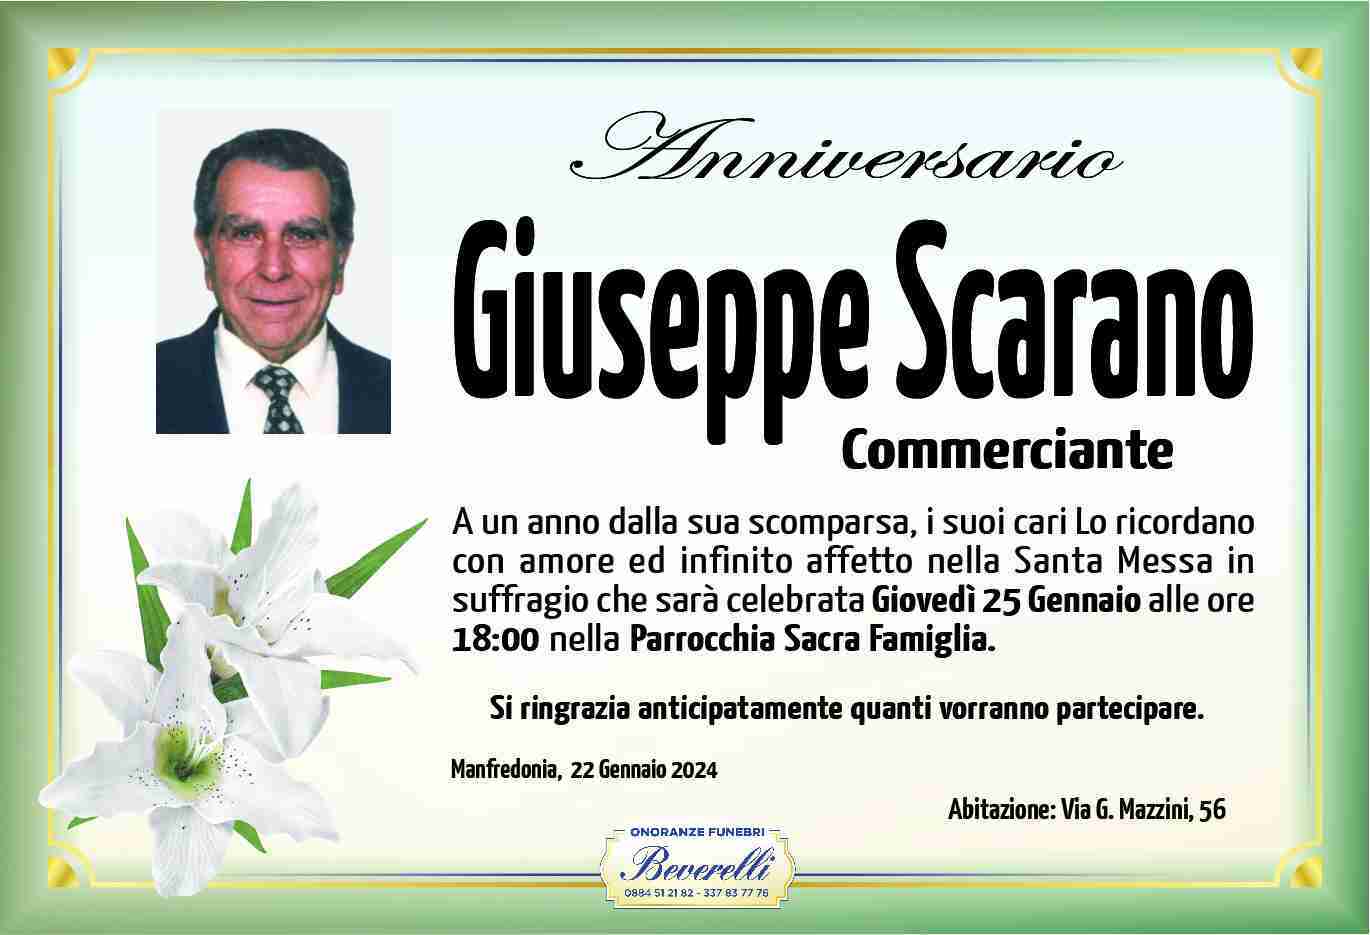 Giuseppe Scarano